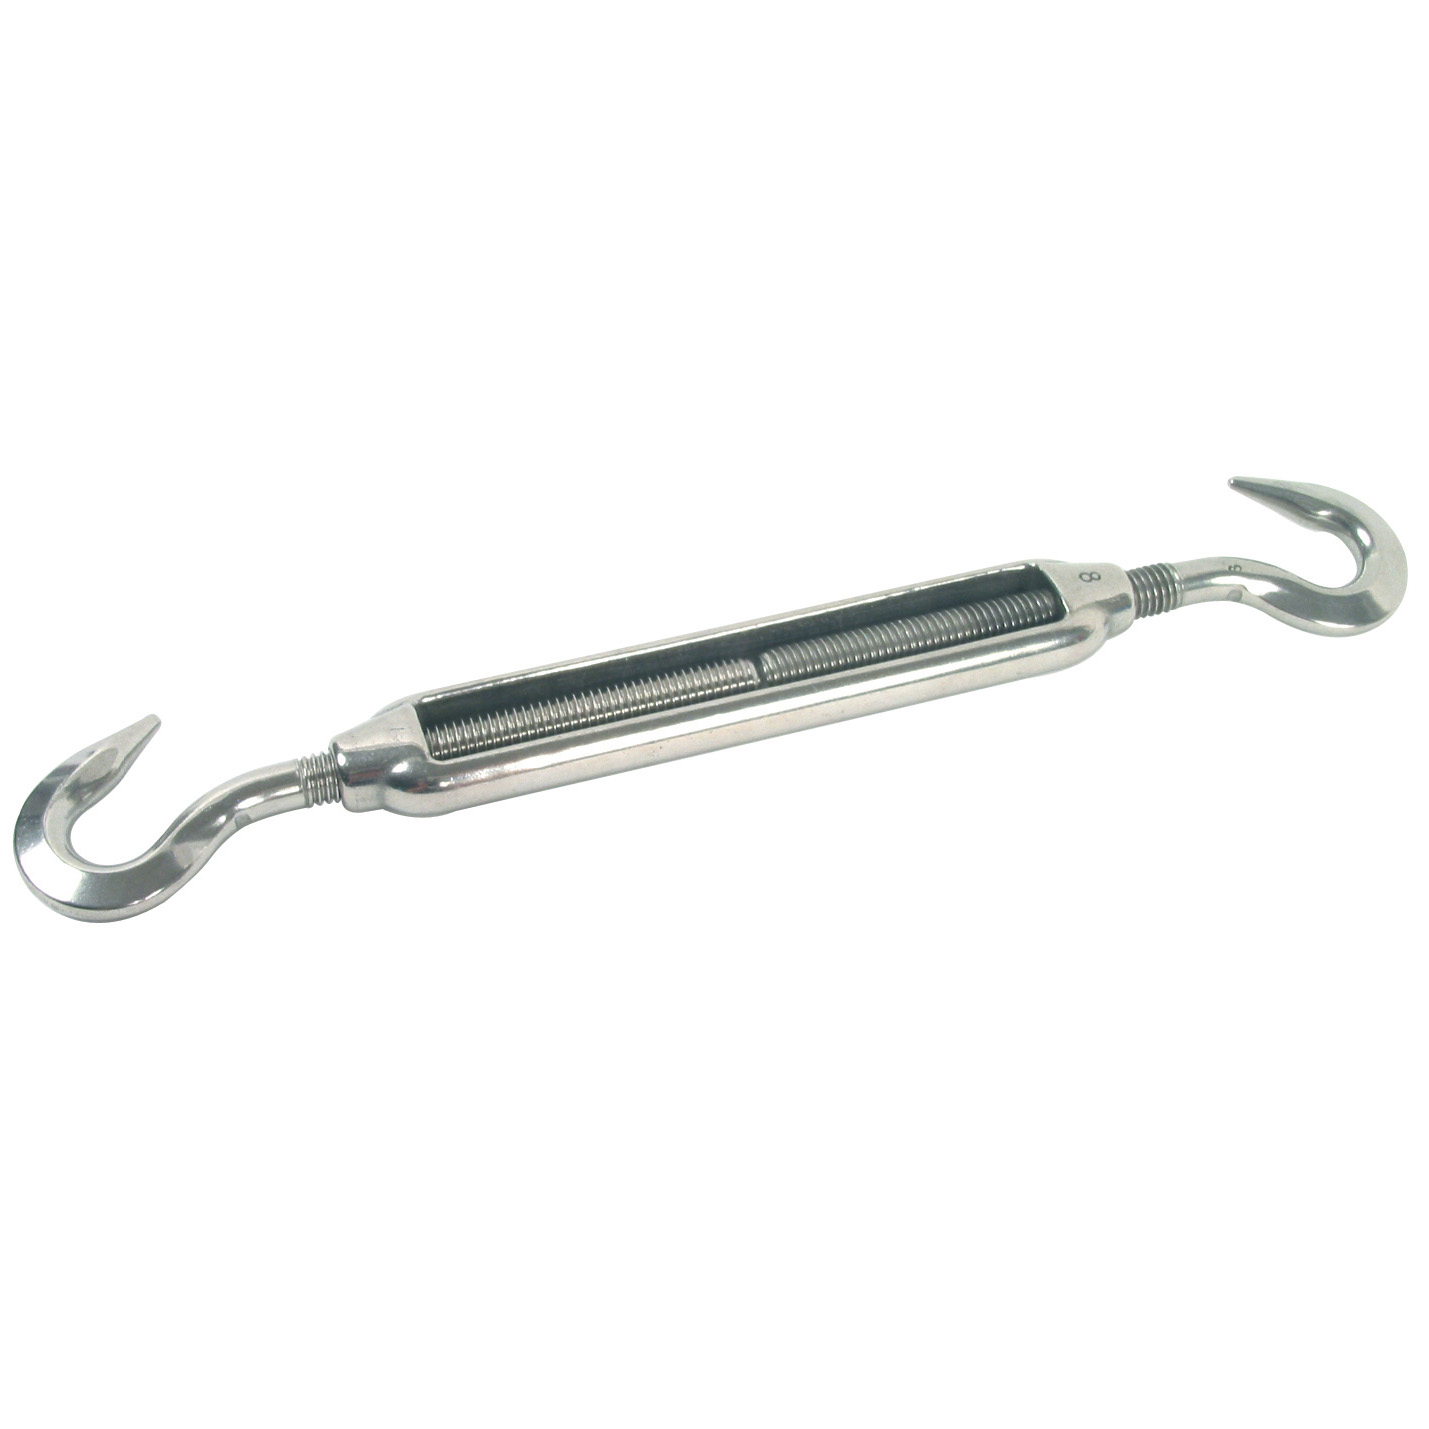 Rigging screw (hook/hook) - Steel - With hook/hook - 